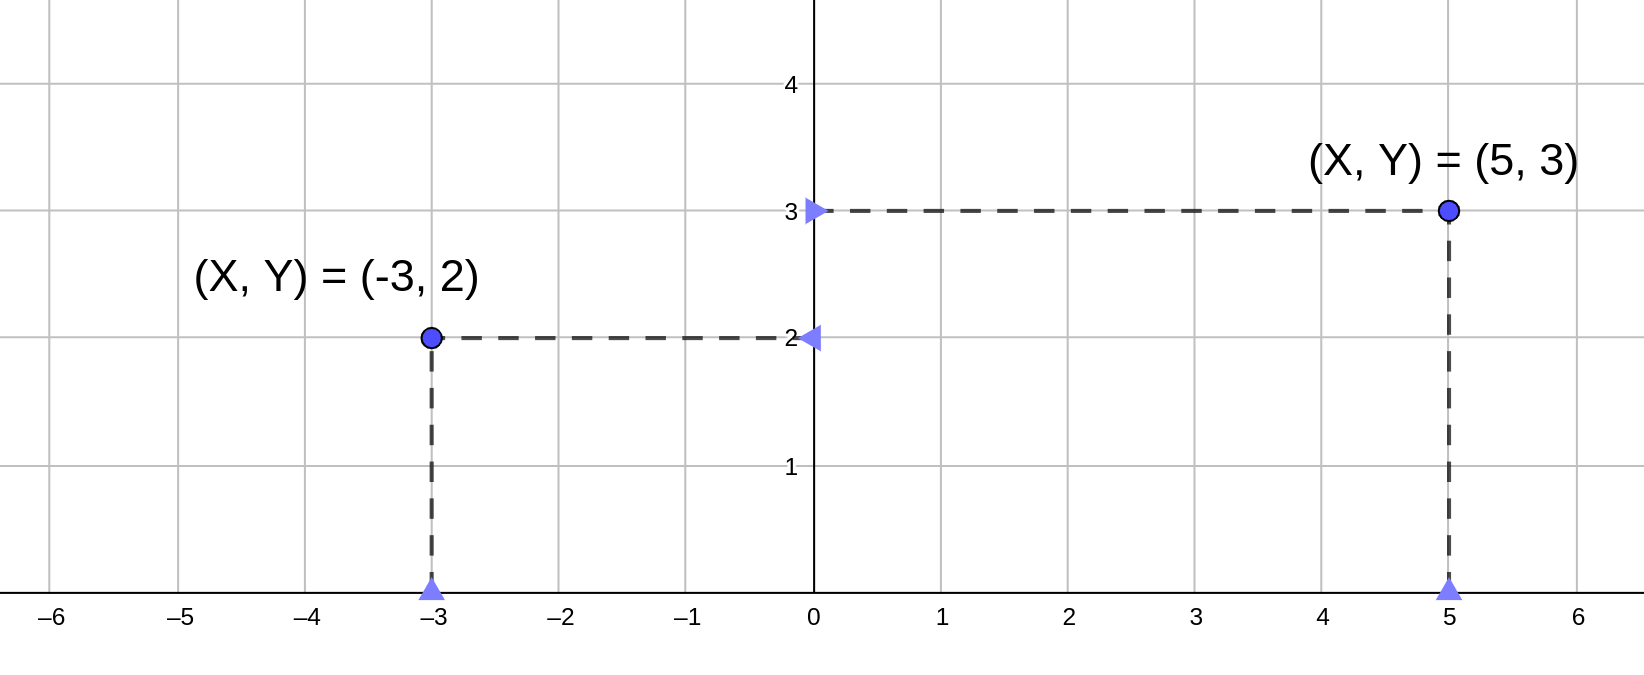 La imagen muestra dos puntos en el plano, (5, 3) y (-3, 2)